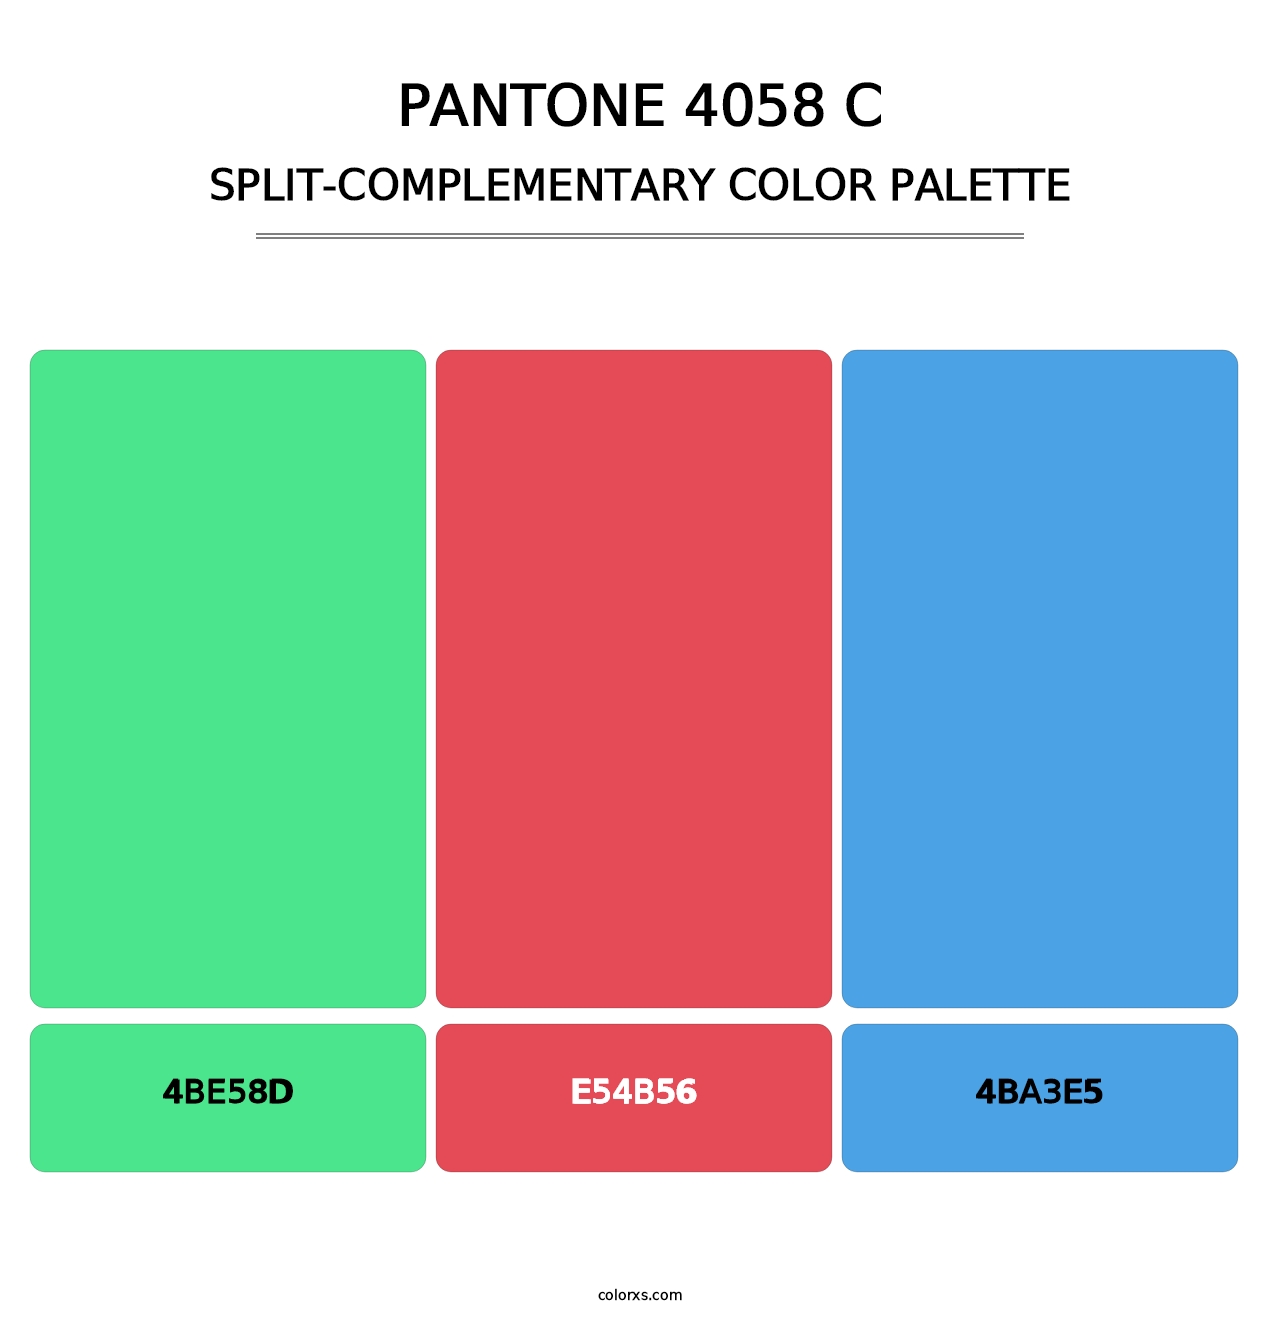 PANTONE 4058 C - Split-Complementary Color Palette